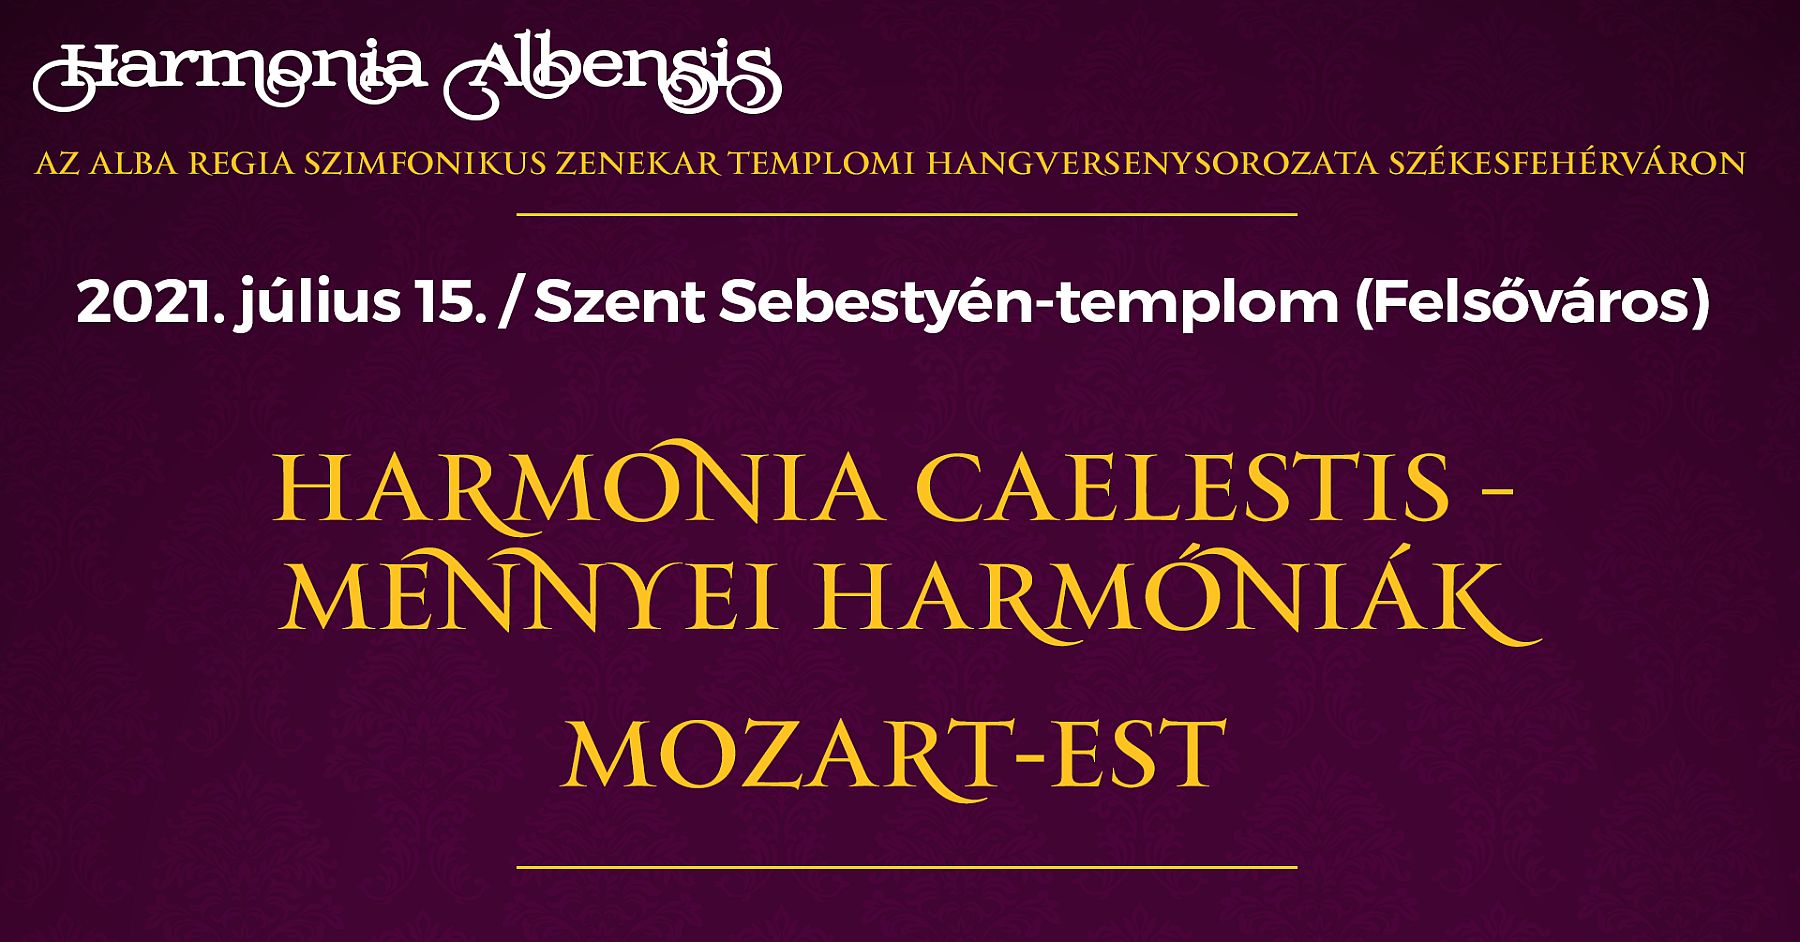 Harmonia caelestis - mennyei harmóniák a Szent Sebestyén-templomban